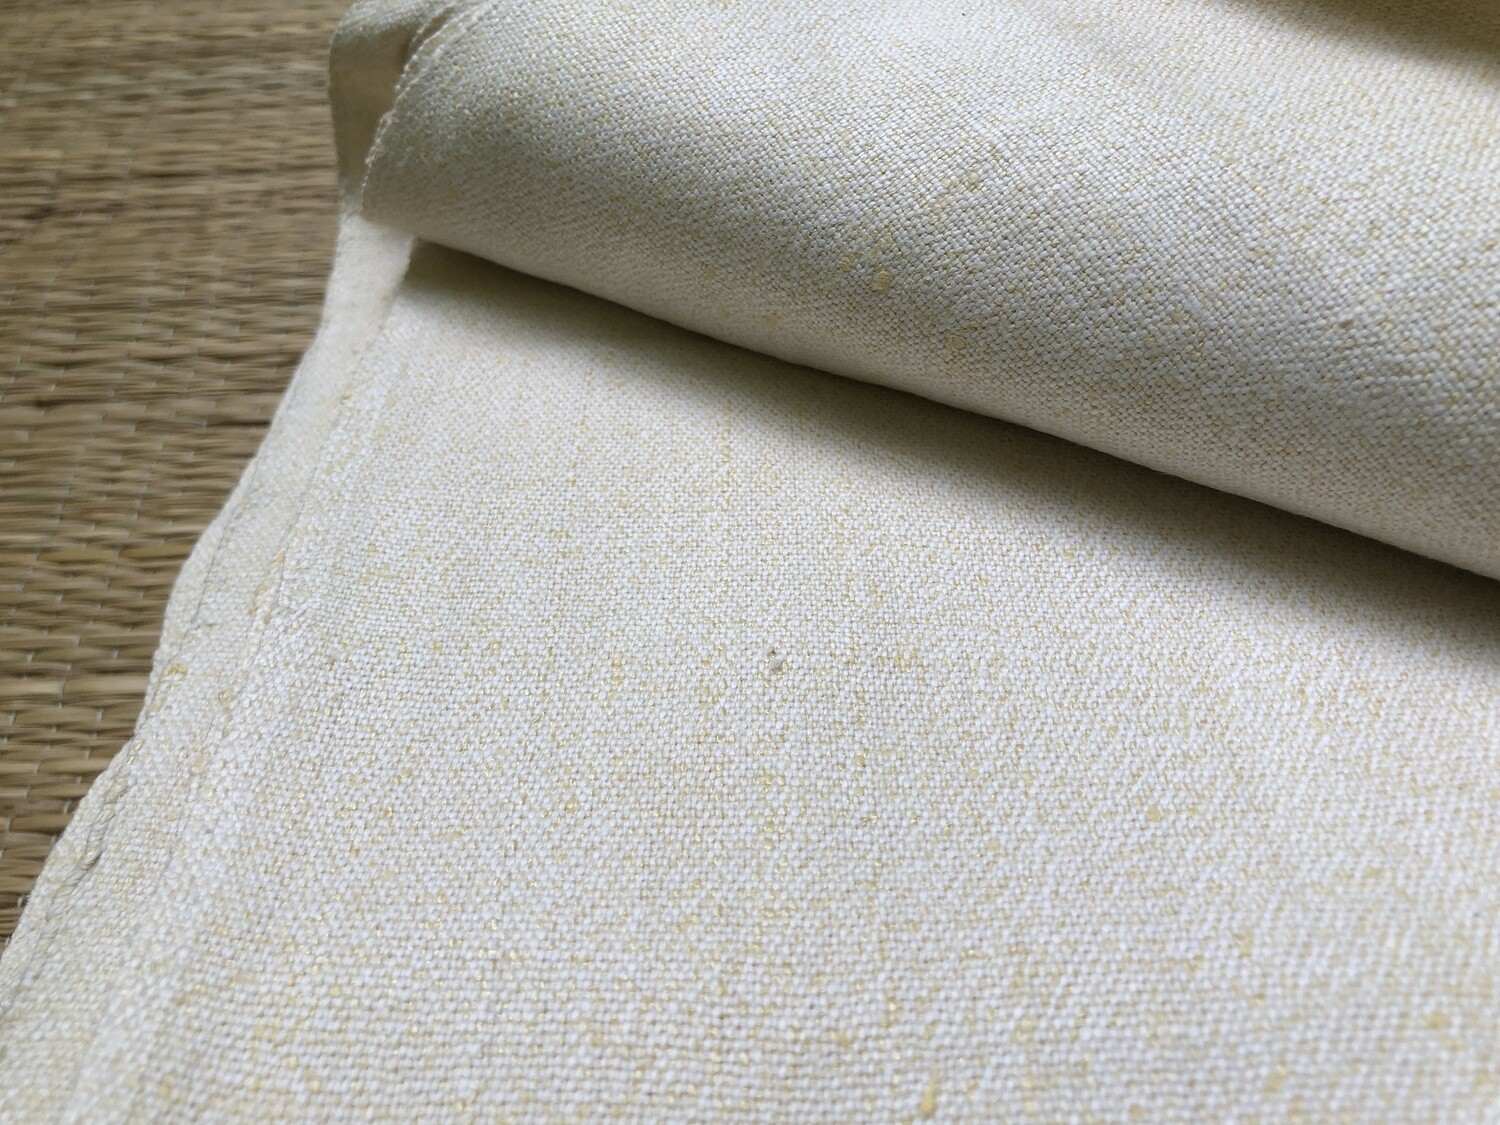 Ahimsa Silk With Cotton Fabric / Peace Silk Fabric With Cotton Fabric / Matka Silk With Cotton Fabric